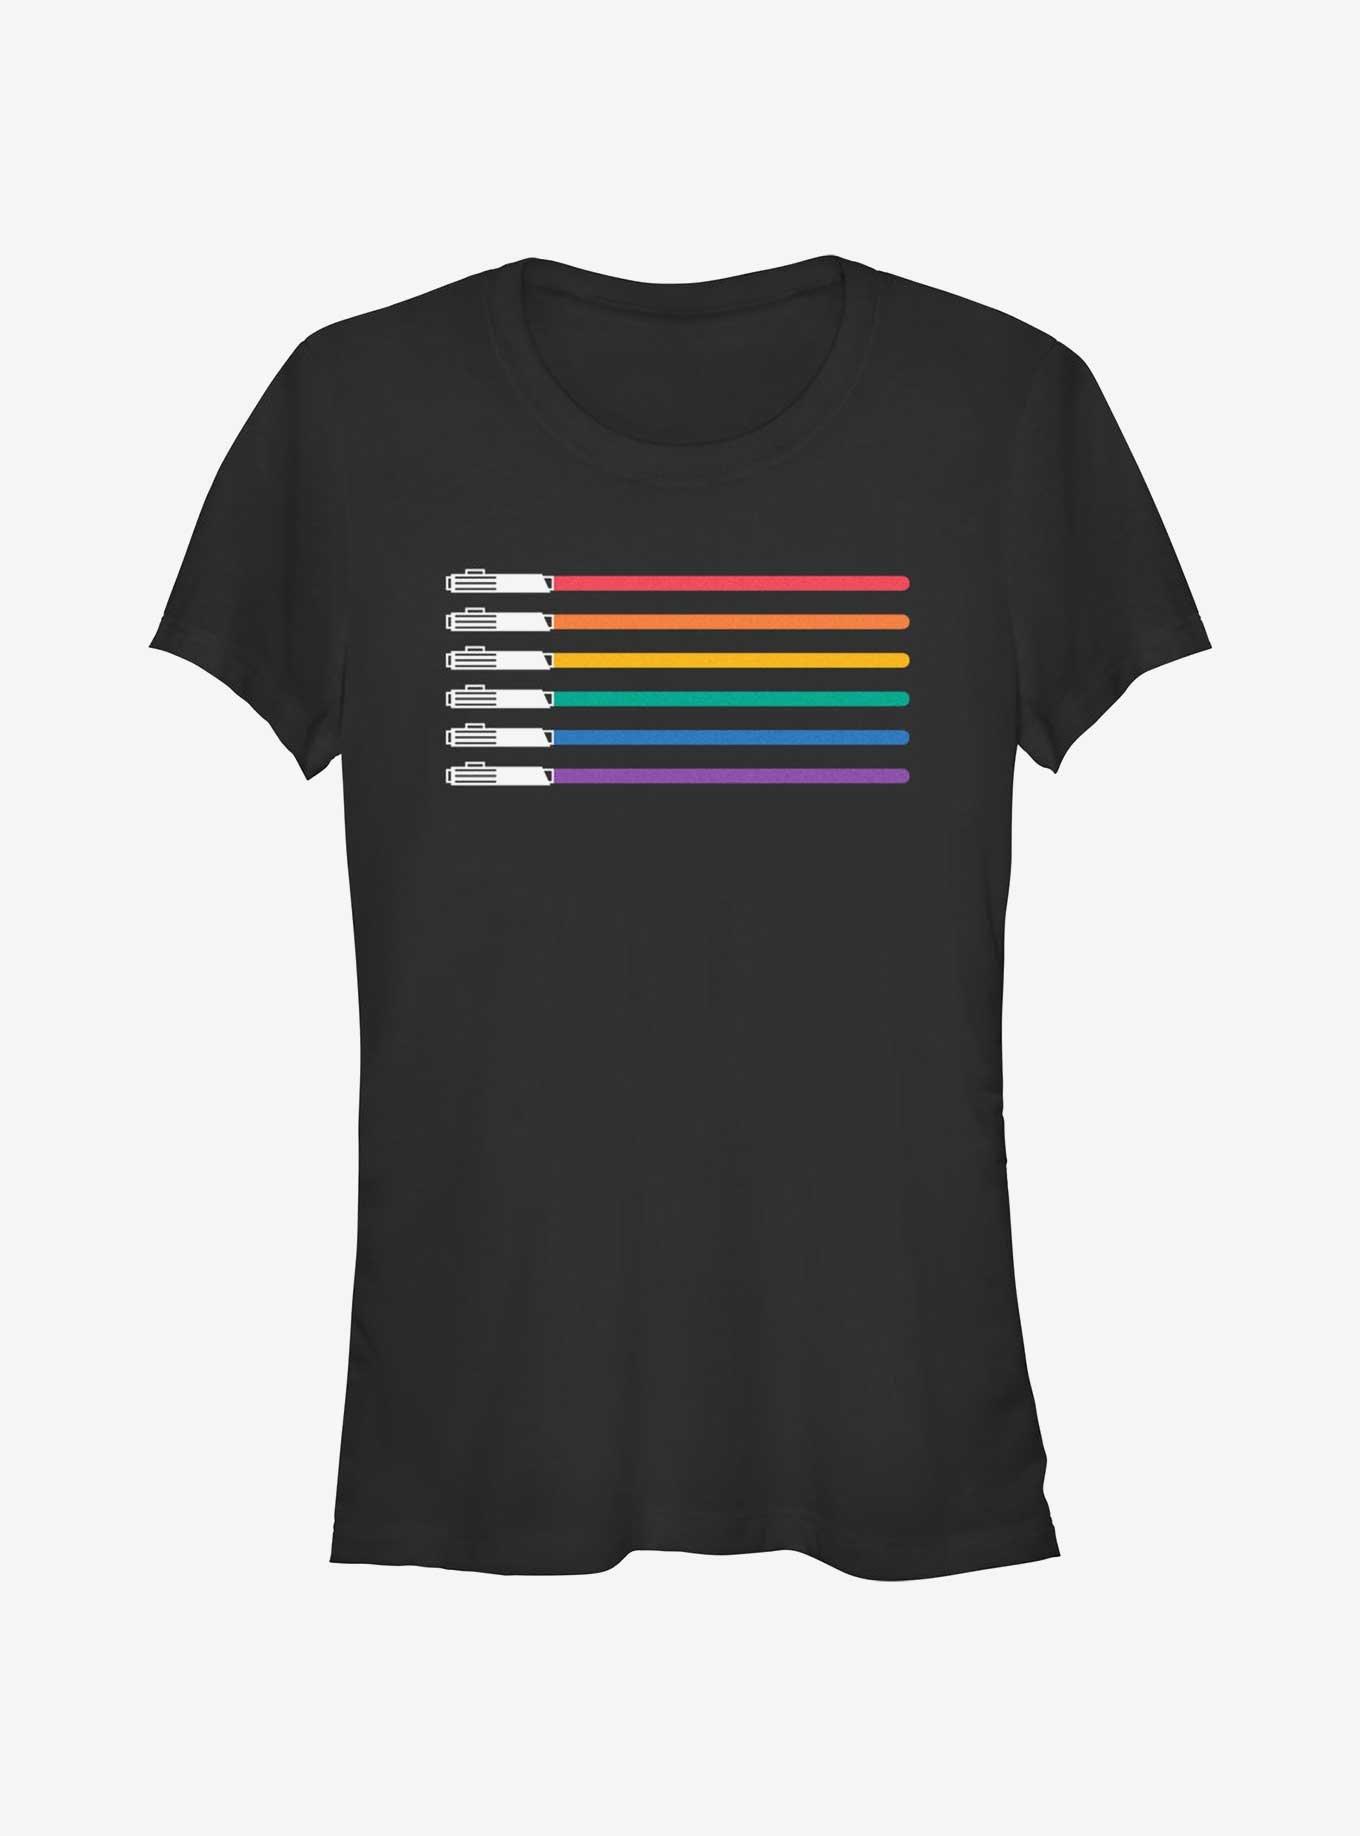 Star Wars Lightsaber Pride Flag T-Shirt, BLACK, hi-res